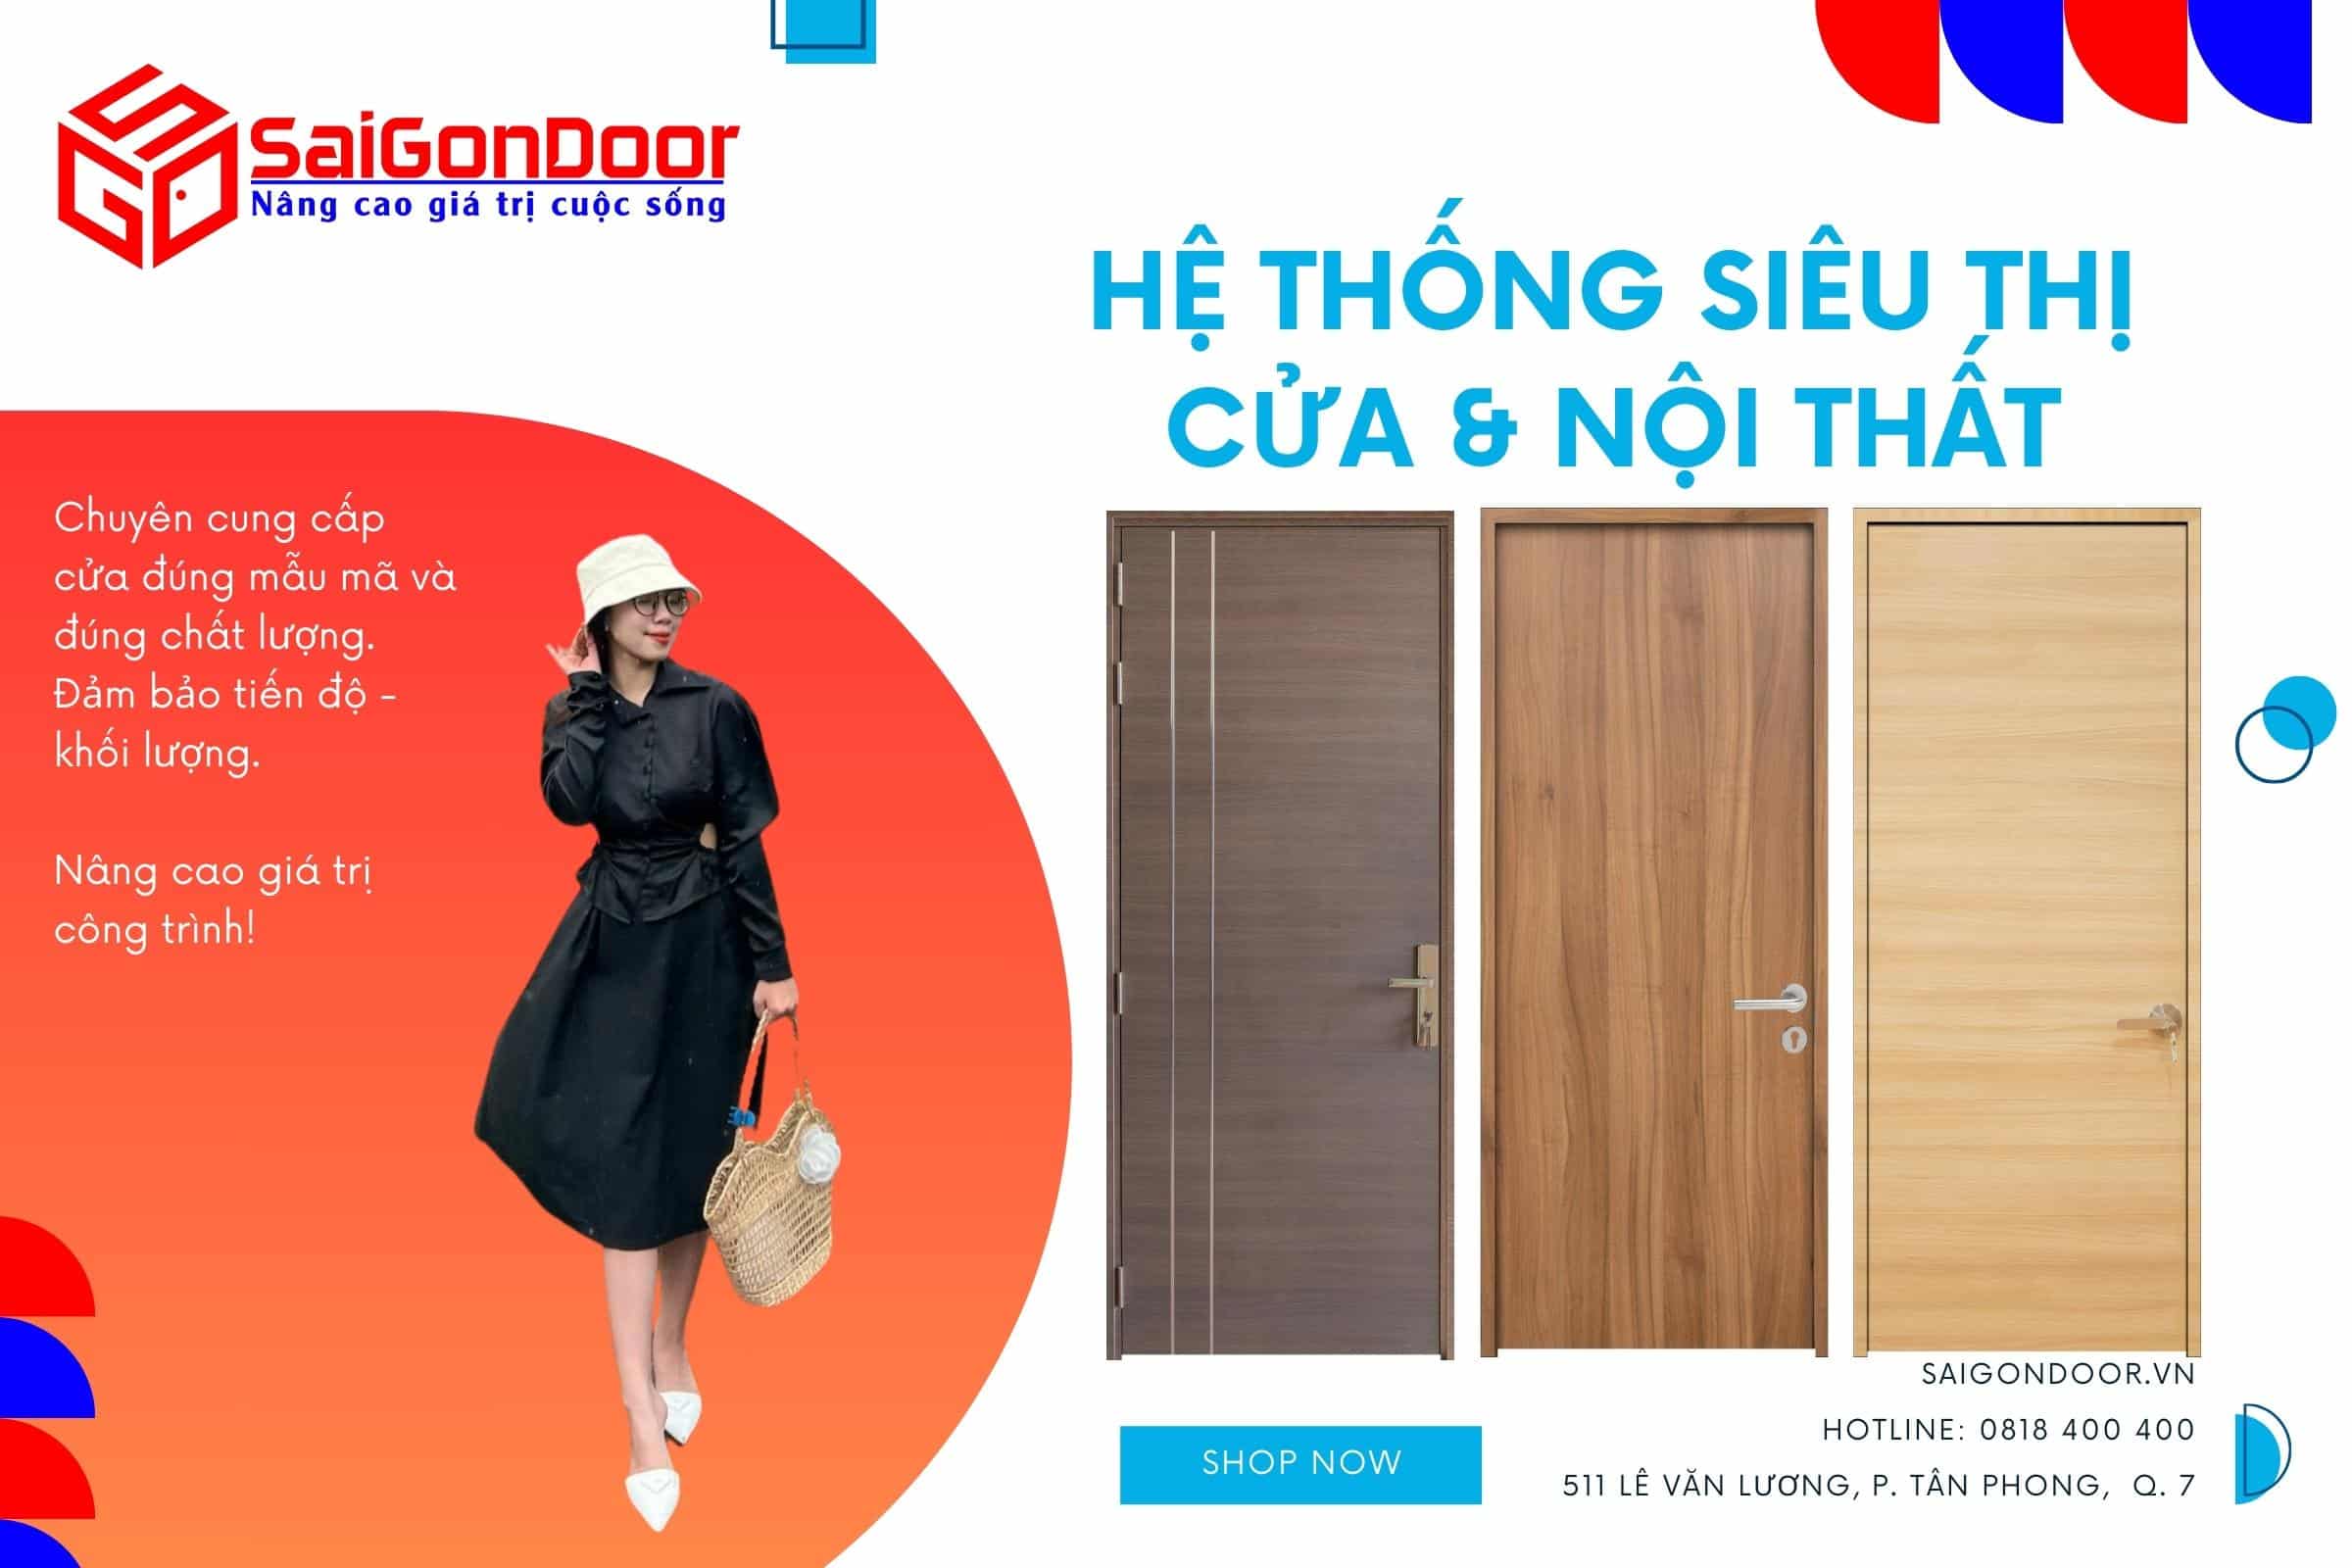 SaigonDoor sản xuất tận xưởng với giá cửa composite tốt nhất toàn cầu